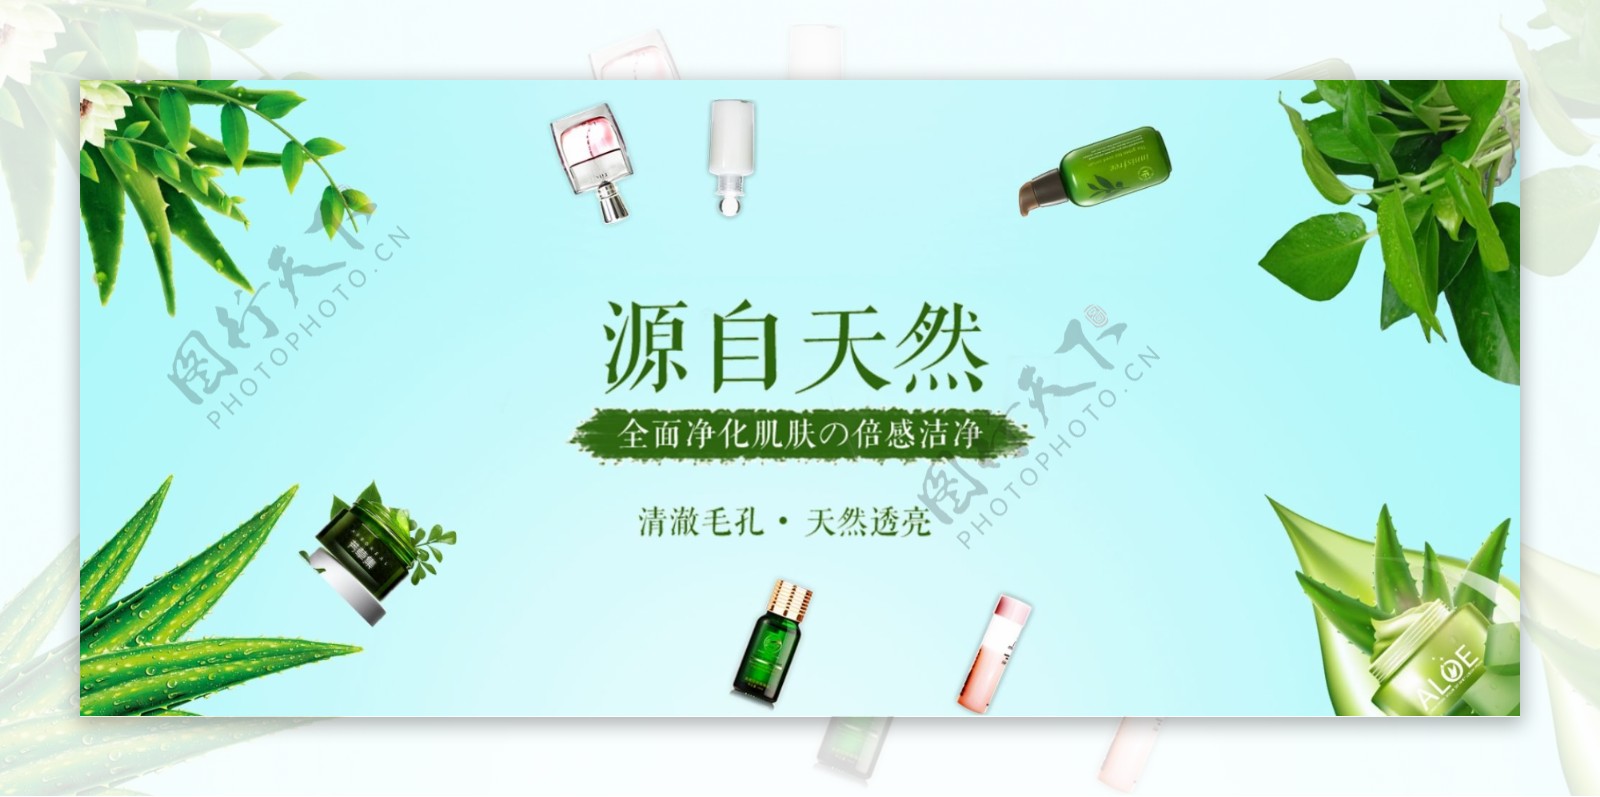 绿色简约奢华源自天然化妆品淘宝电商海报